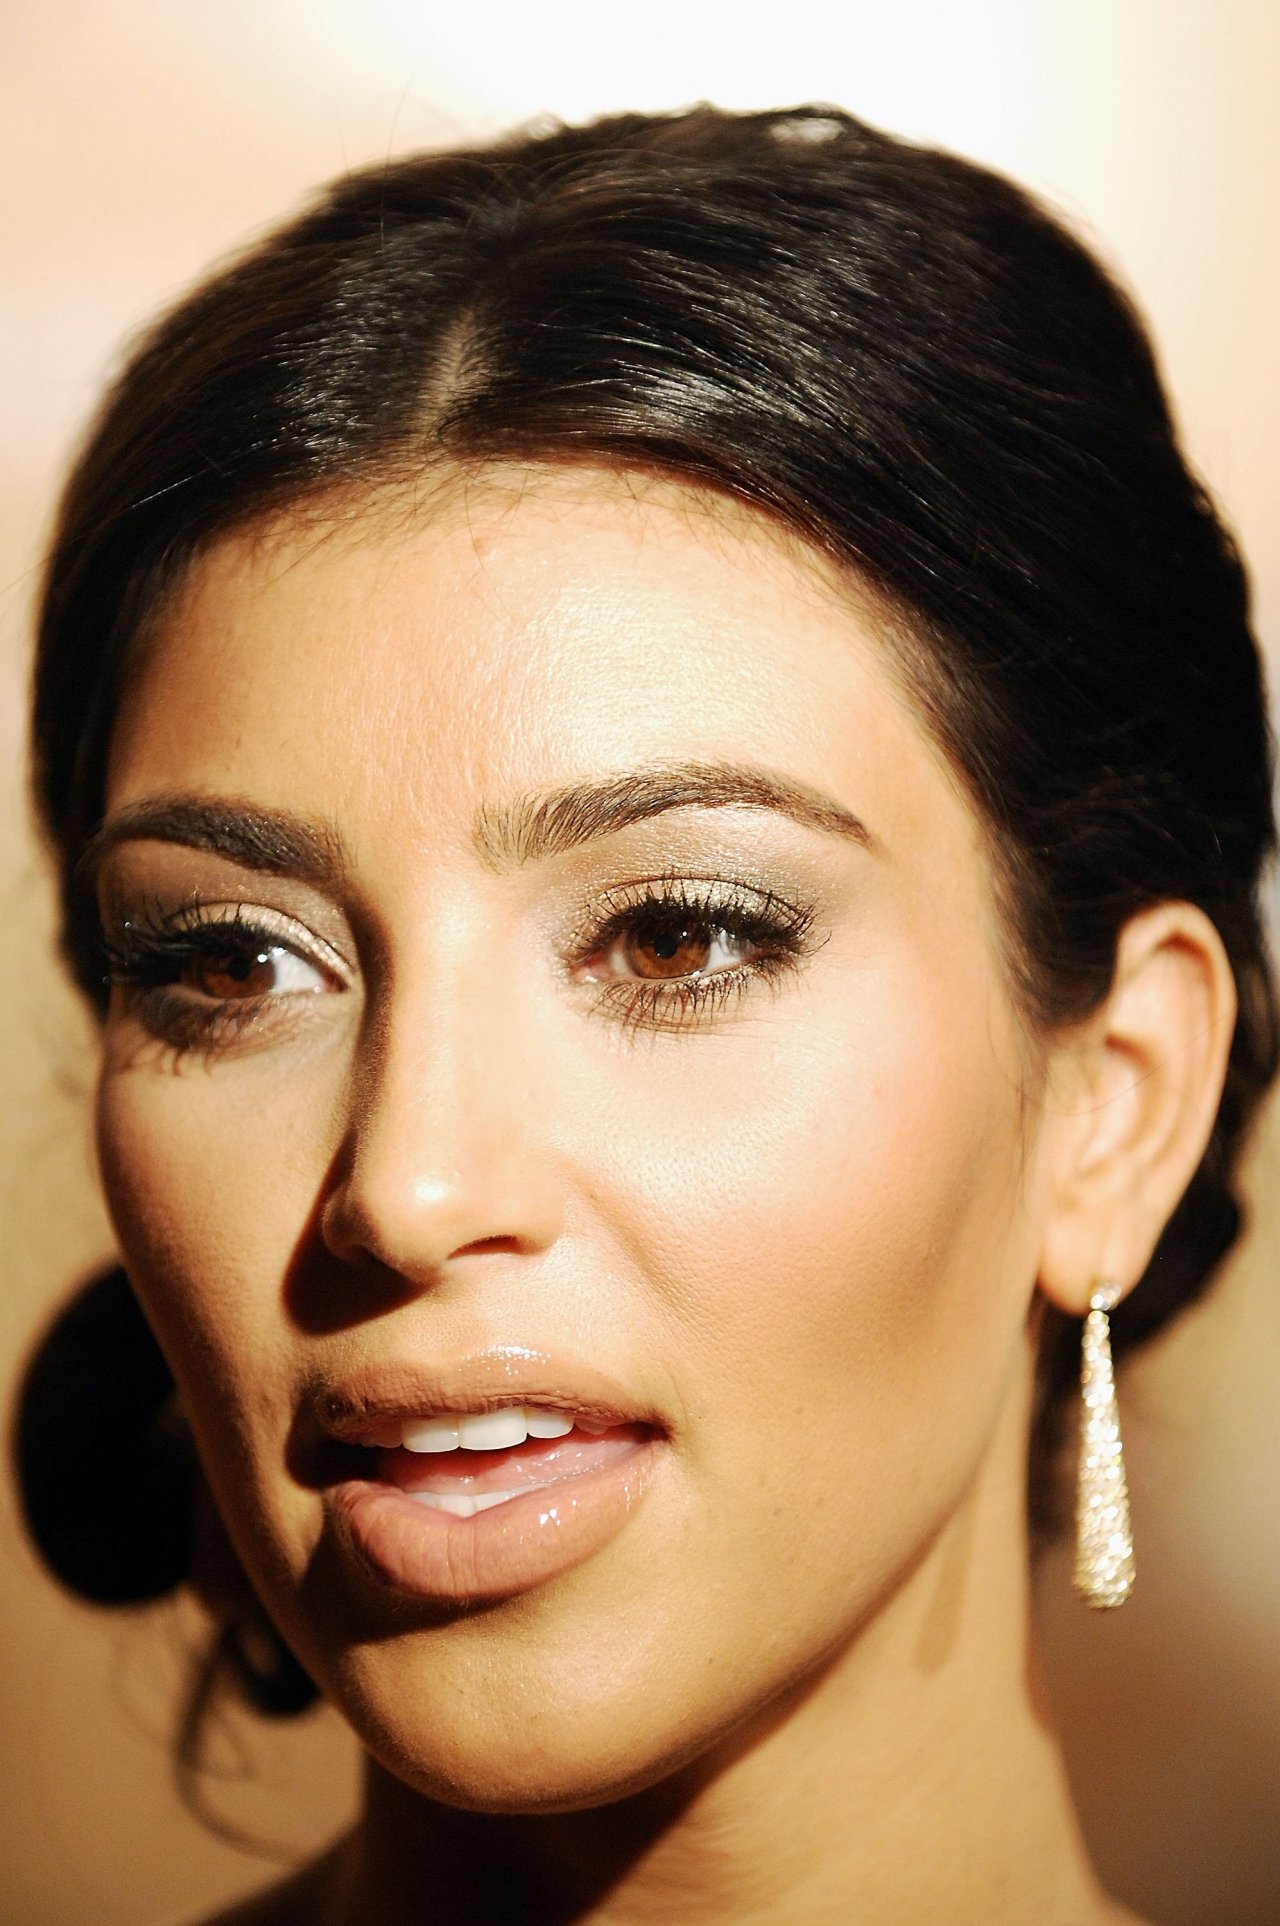 Kim Kardashian leaked wallpapers